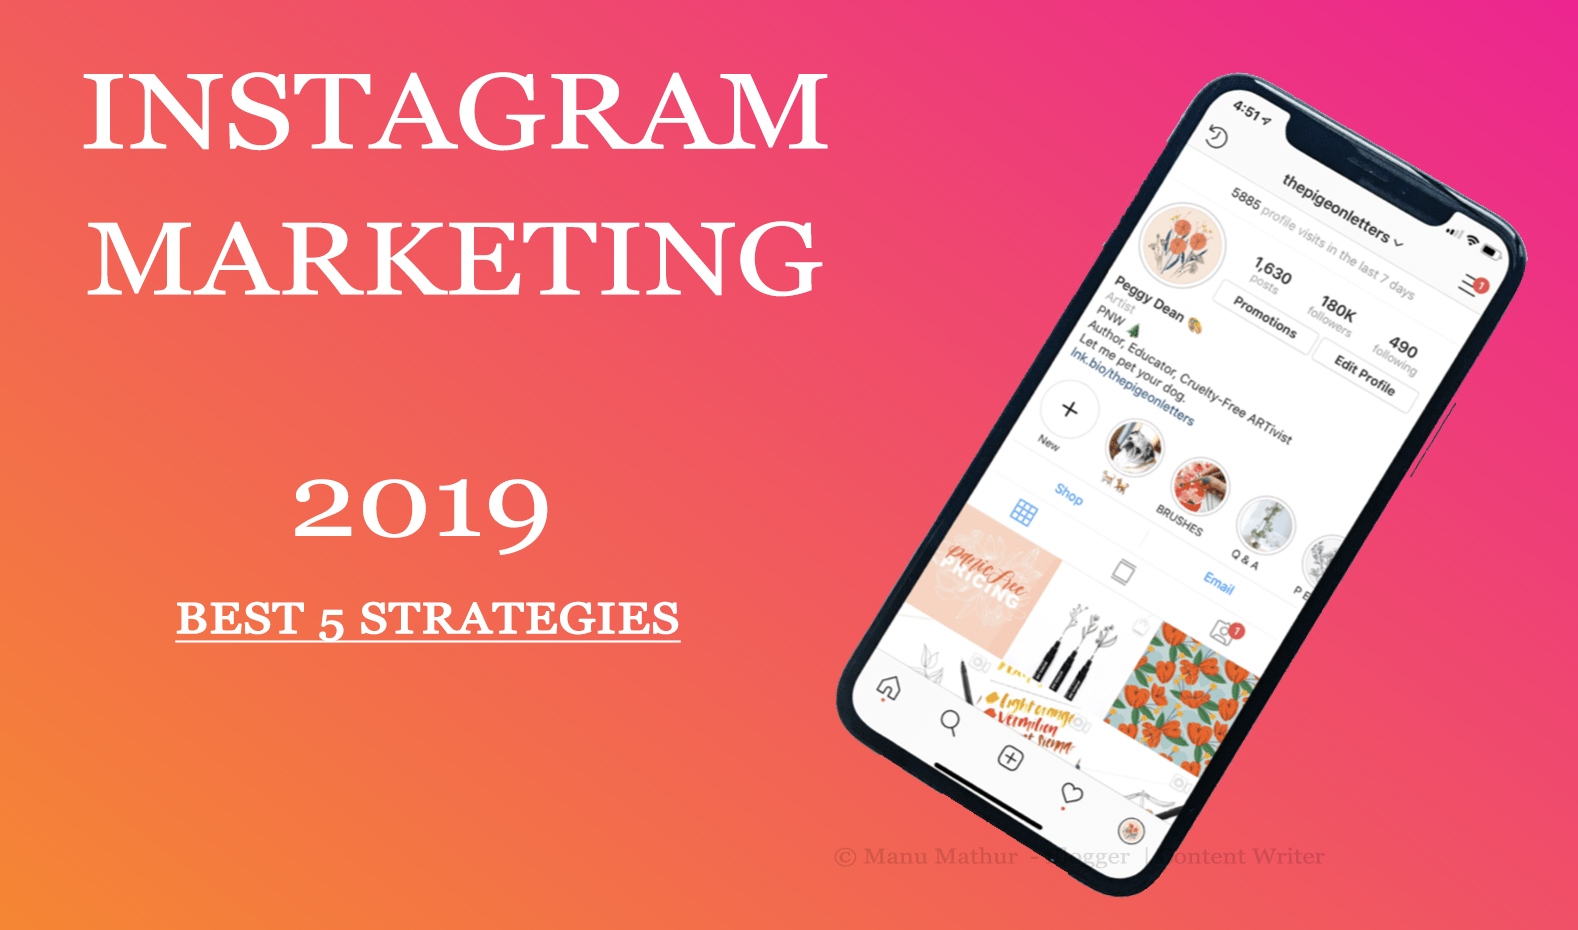 Instagram Marketing: 5 Best Strategies That Worked in 2019